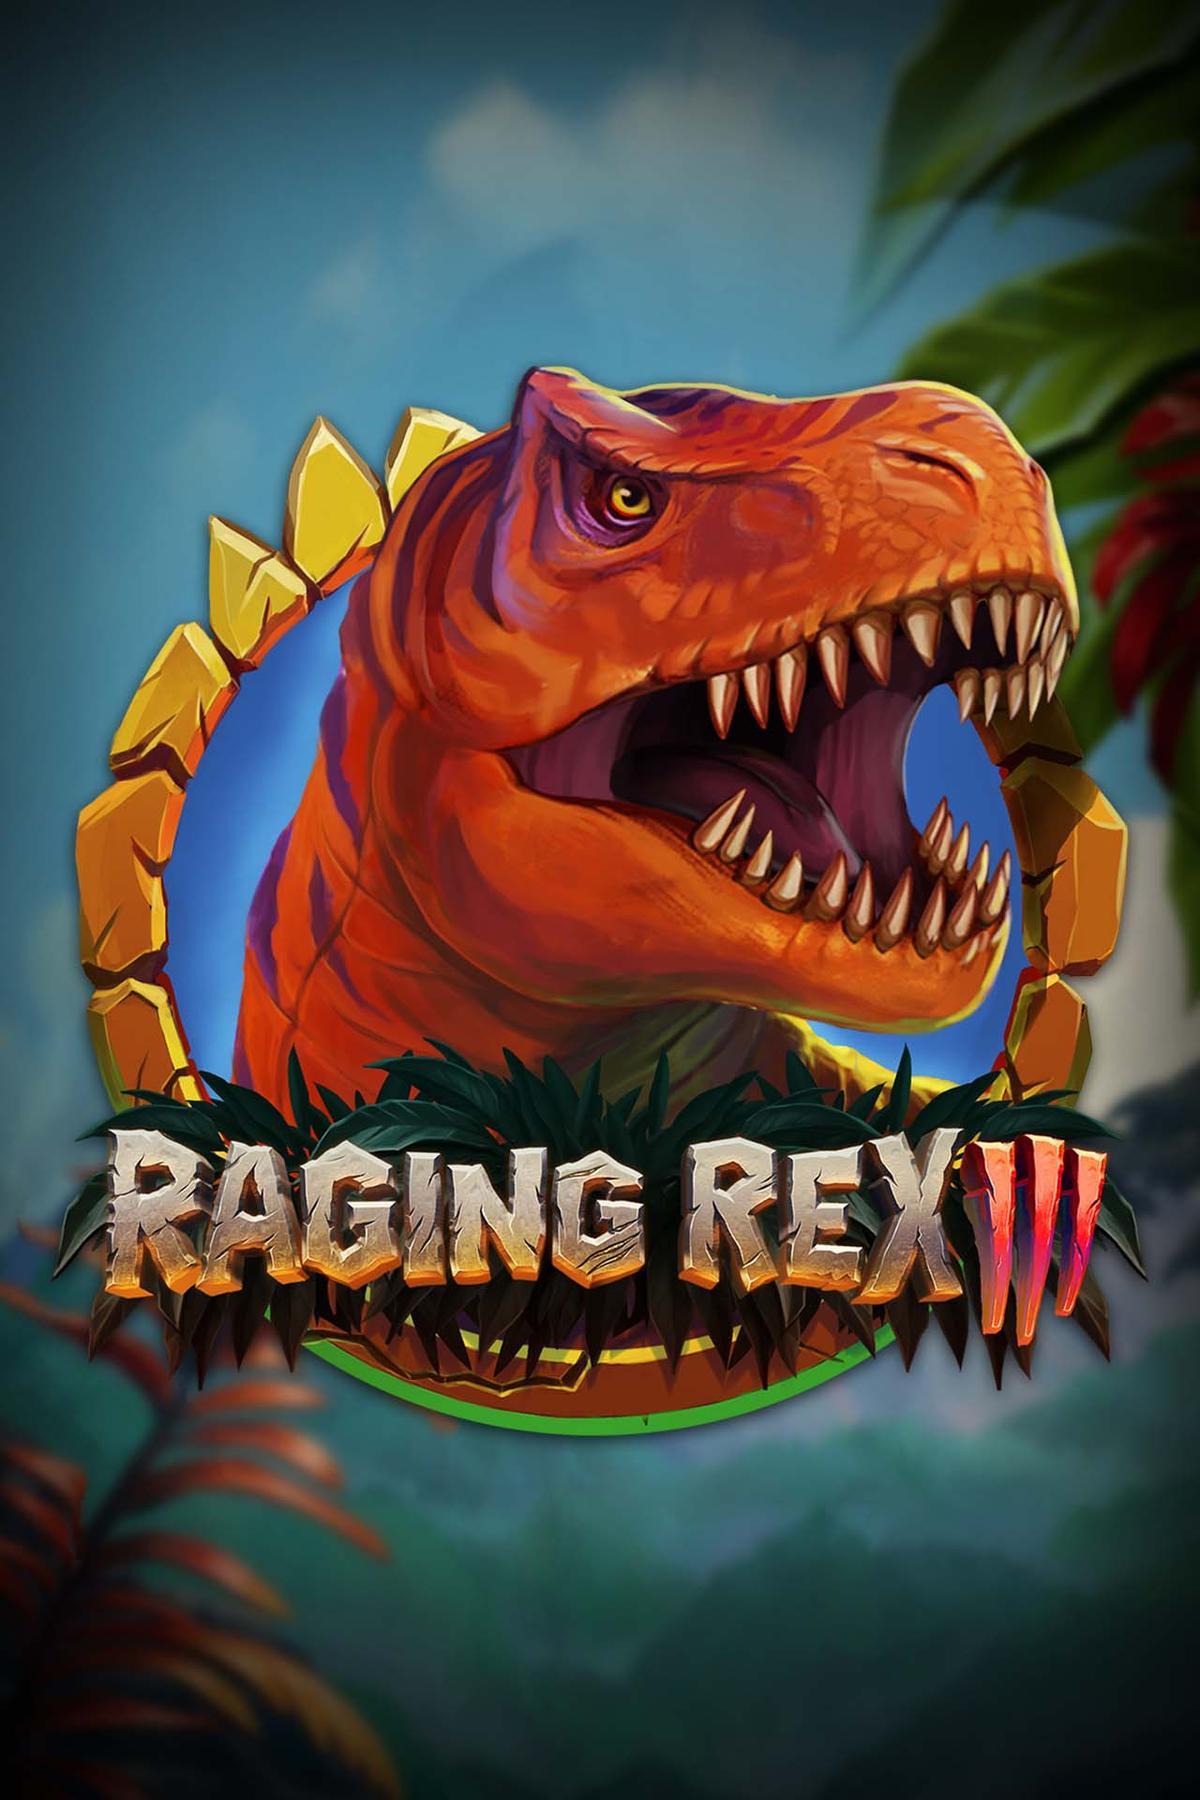 Raging Rex 3